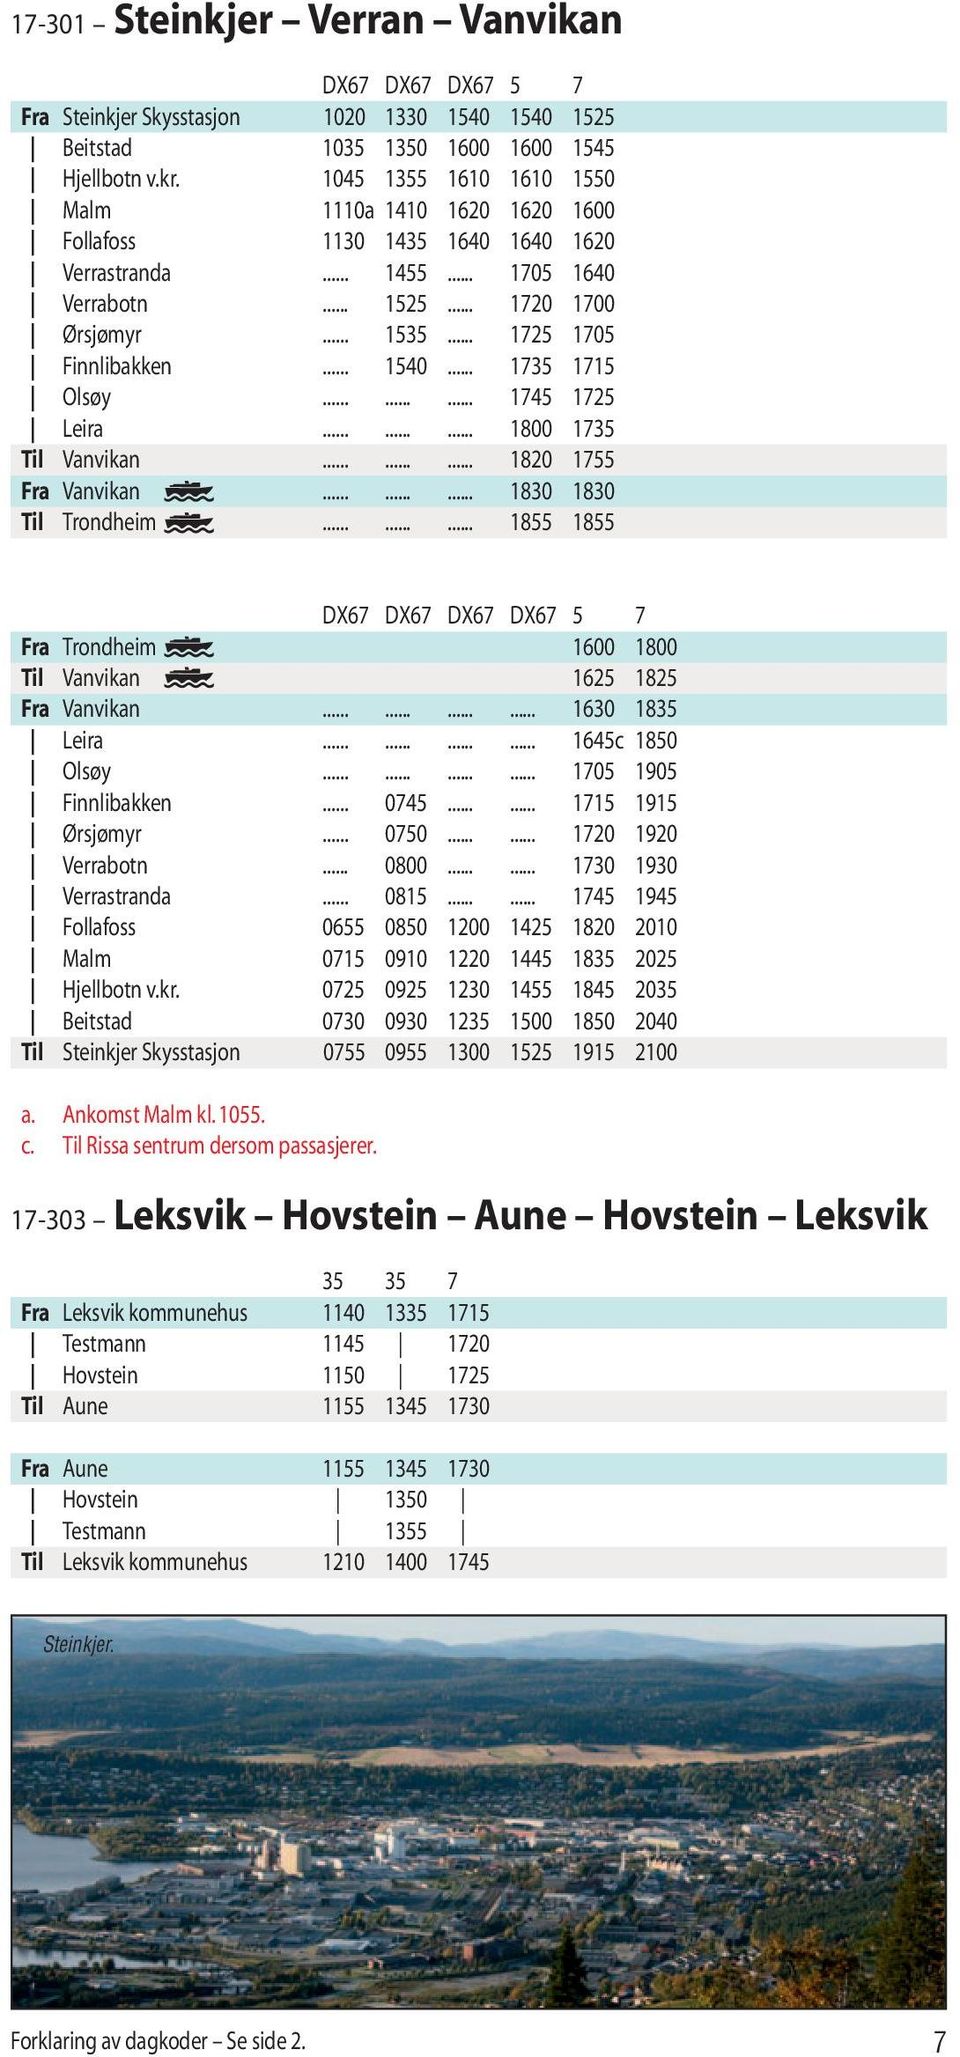 .. 1540... 1735 1715 Olsøy......... 1745 1725 Leira......... 1800 1735 Til Vanvikan......... 1820 1755 Fra Vanvikan......... 1830 1830 Til Trondheim.